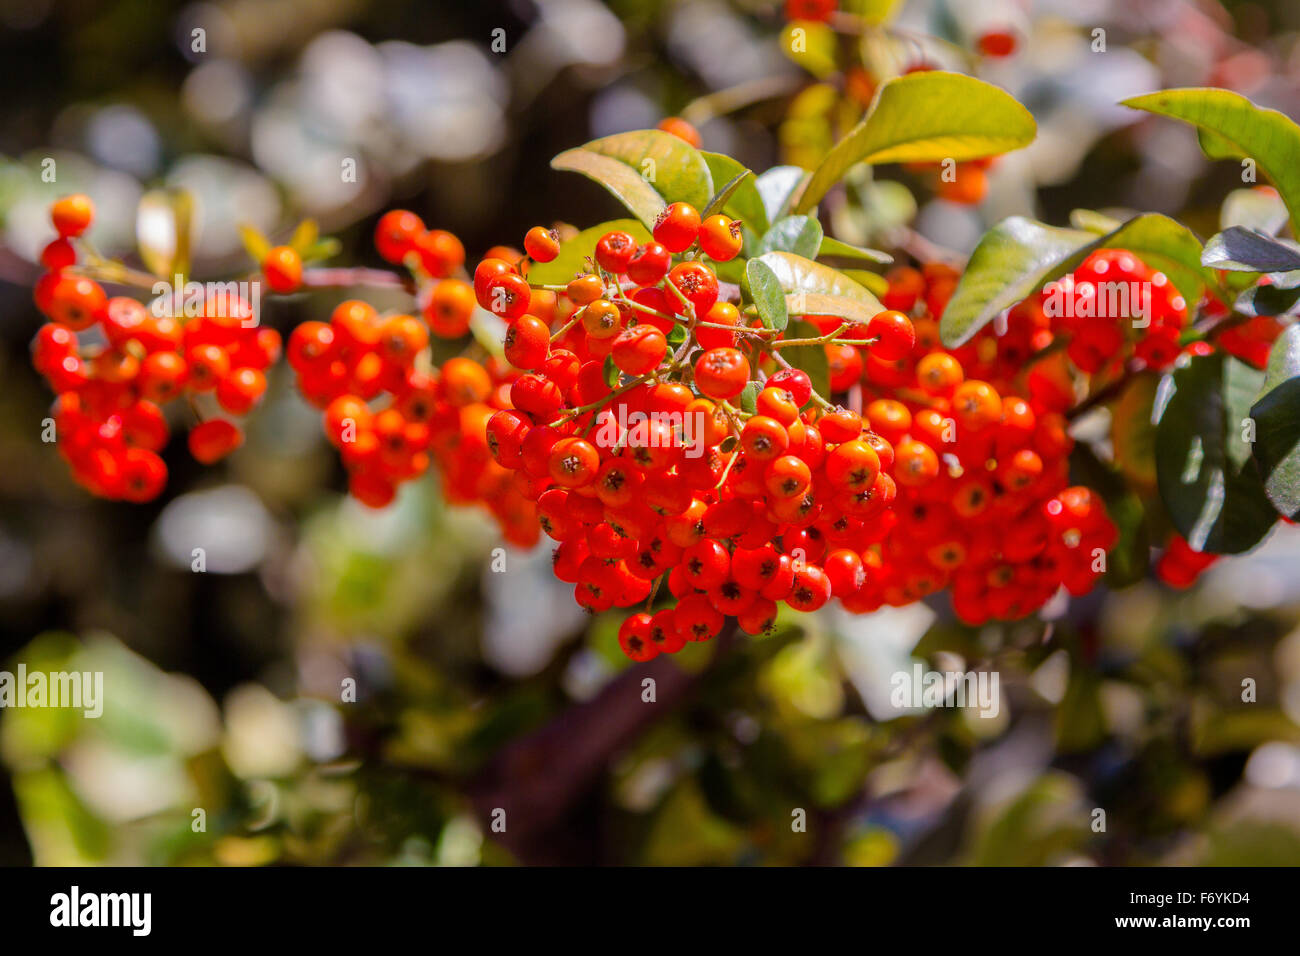 Viburnum berries ripen on the bush Stock Photo